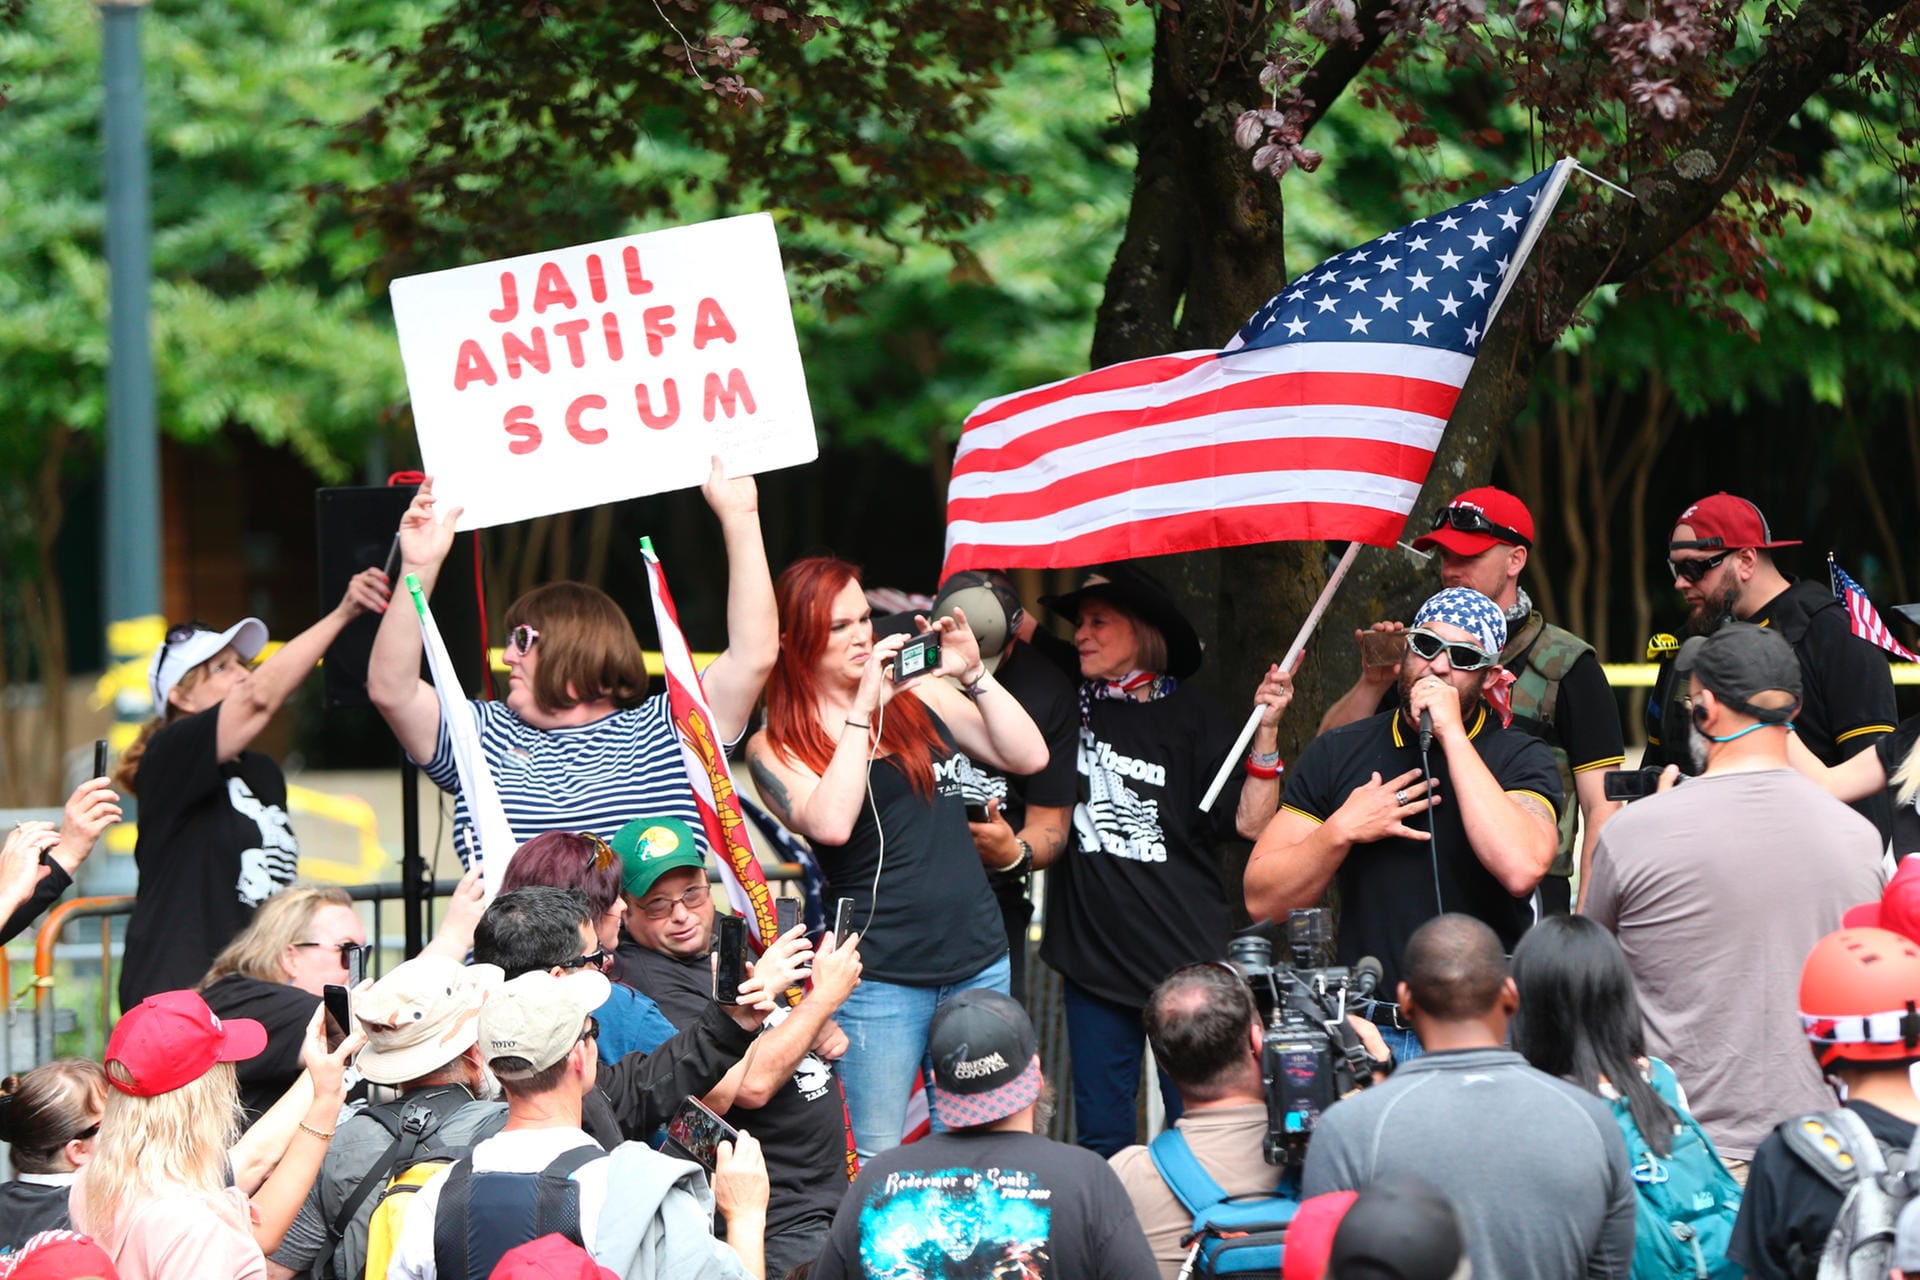 Unter den Anhängern der rechtsextremen Gruppe Patriot Prayer hält eine Frau ein Schild mit einem Schriftzug gegen die Linken hoch: "Jail Antifa Scum" (deutsch: "Ins Gefängnis mit dem Antifa-Abschaum"): Die Linken hatten zu Gegendemonstrationen aufgerufen.